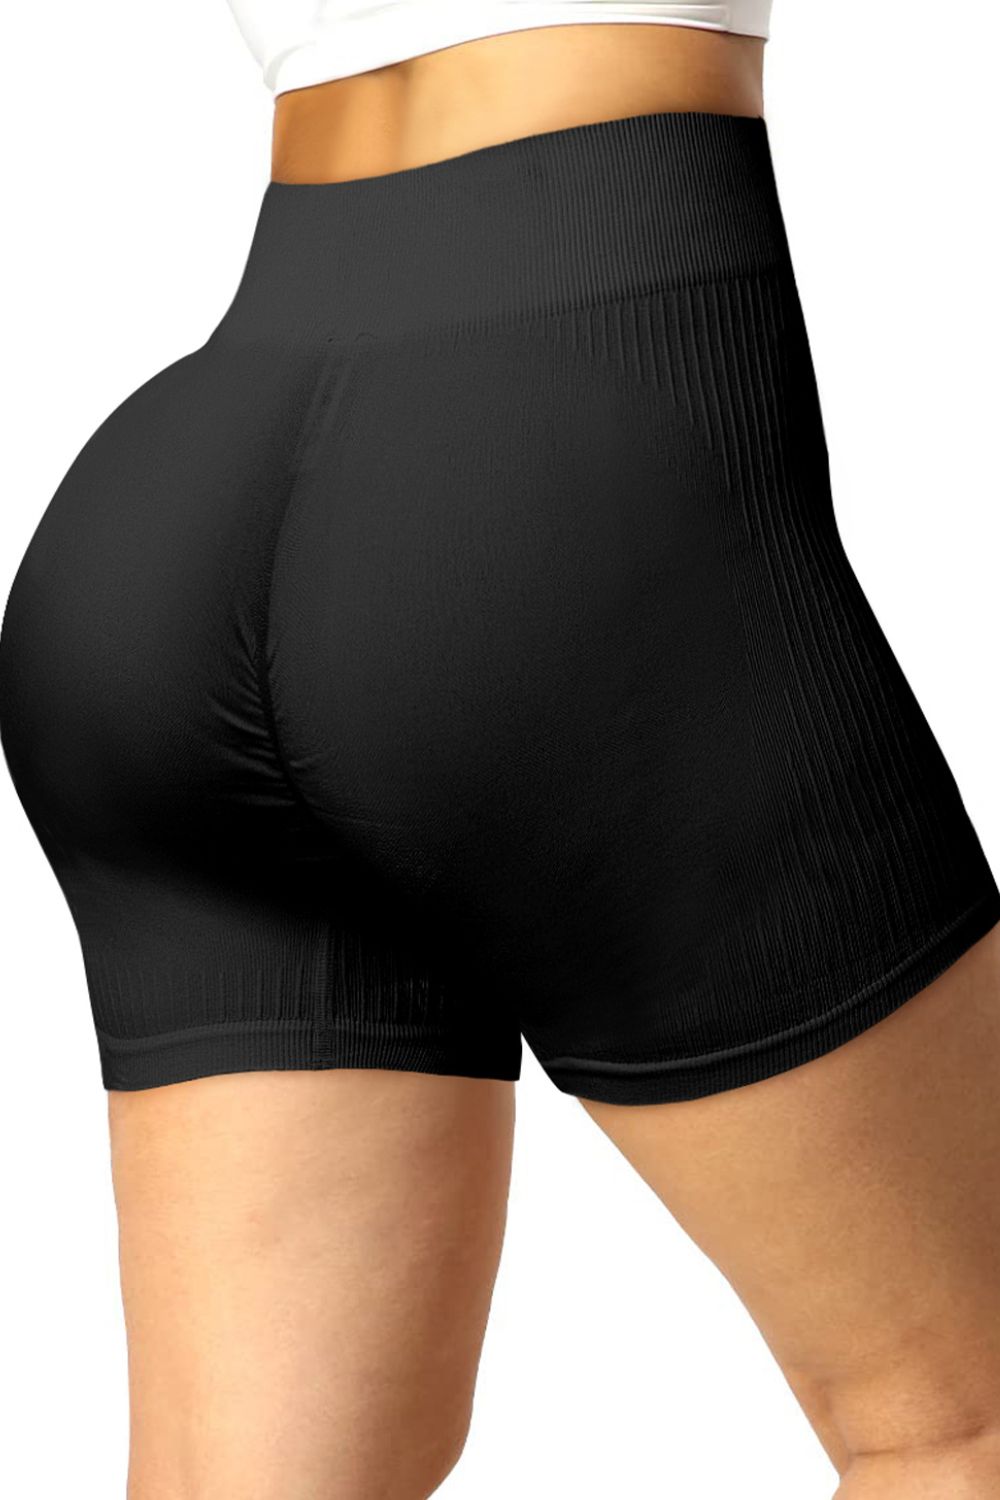 Butt lifter shorts